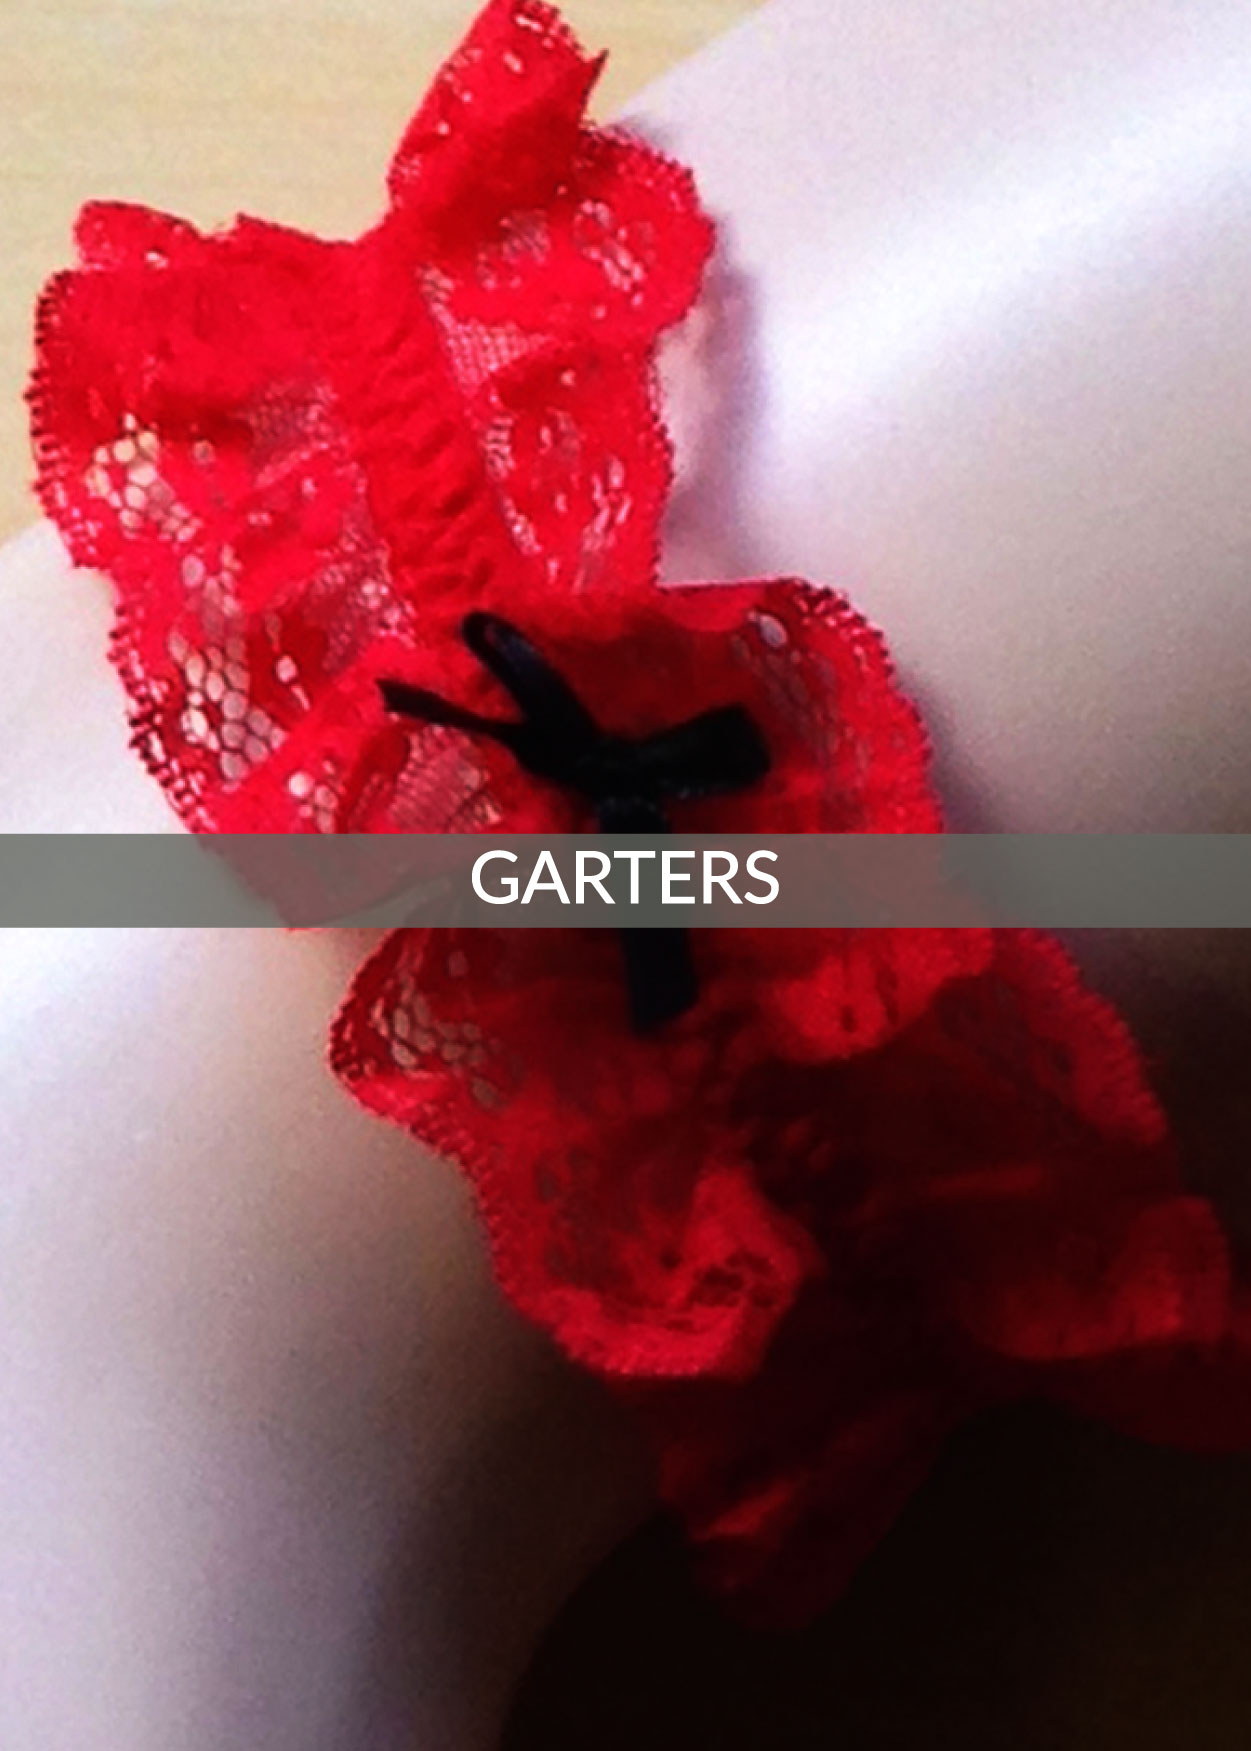 Garters